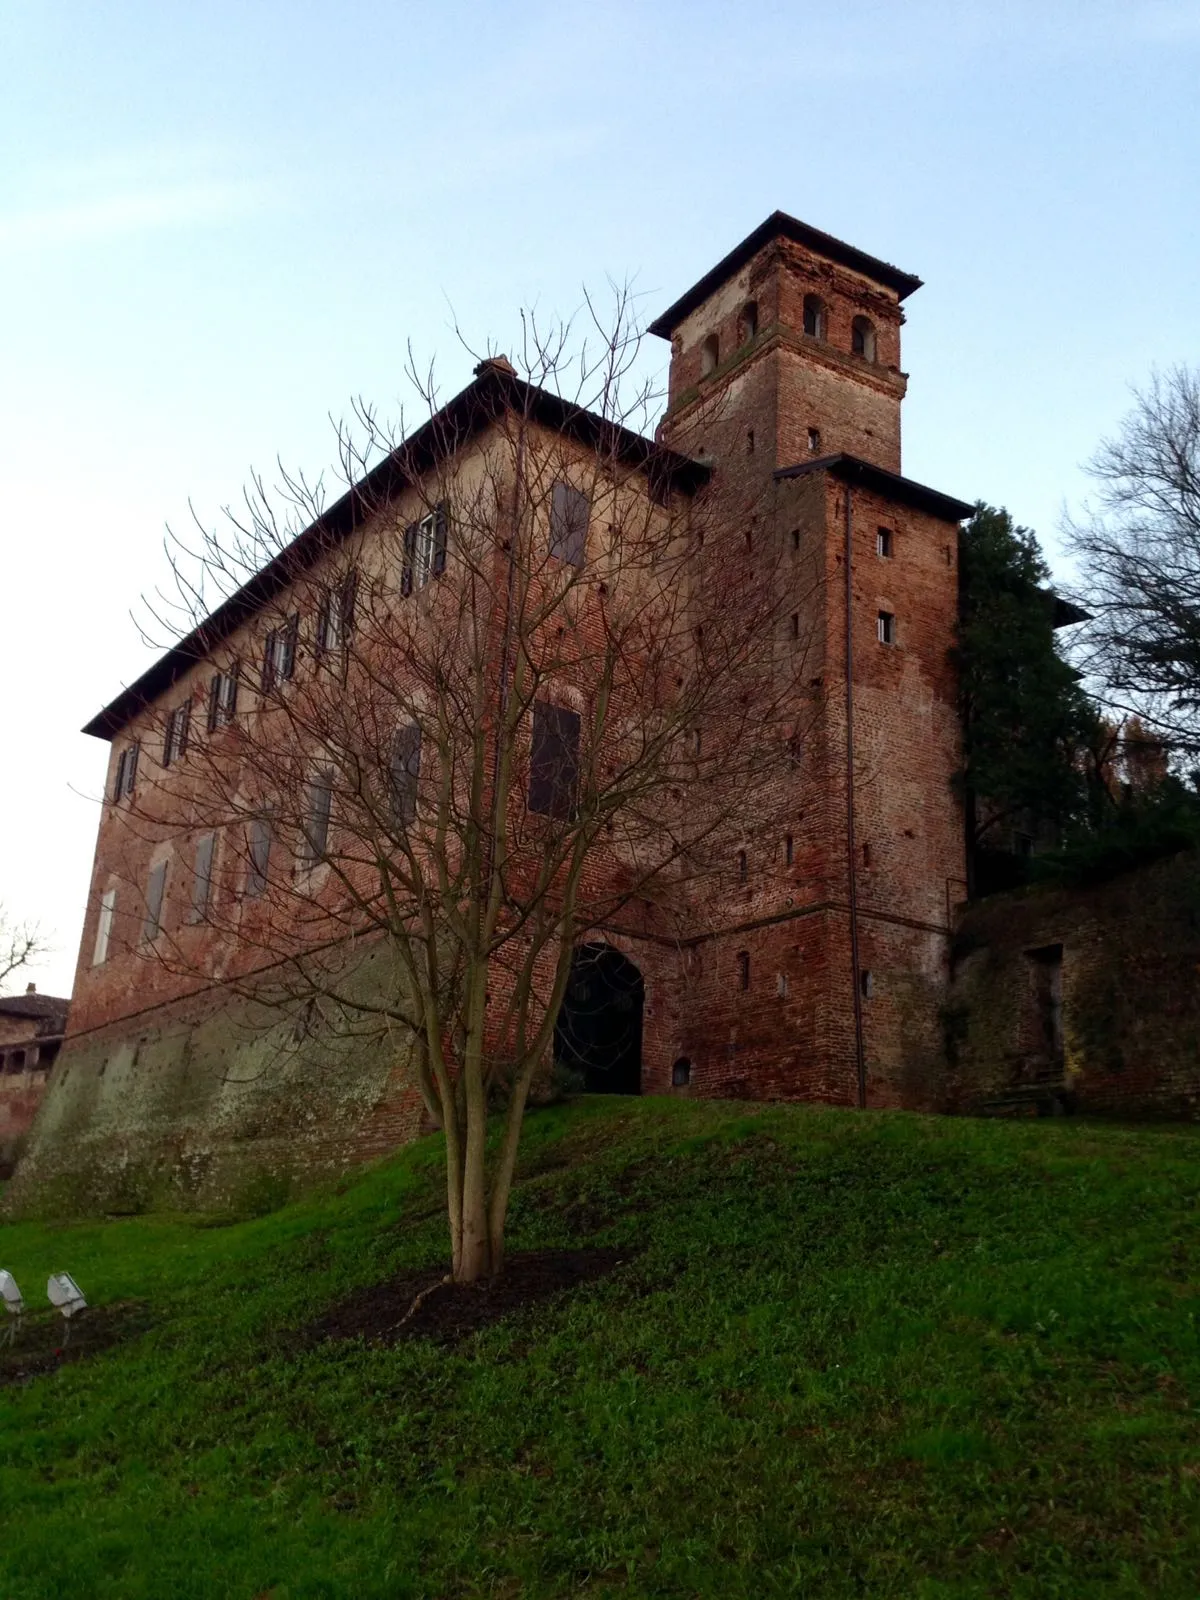 Bild von Emilia-Romagna